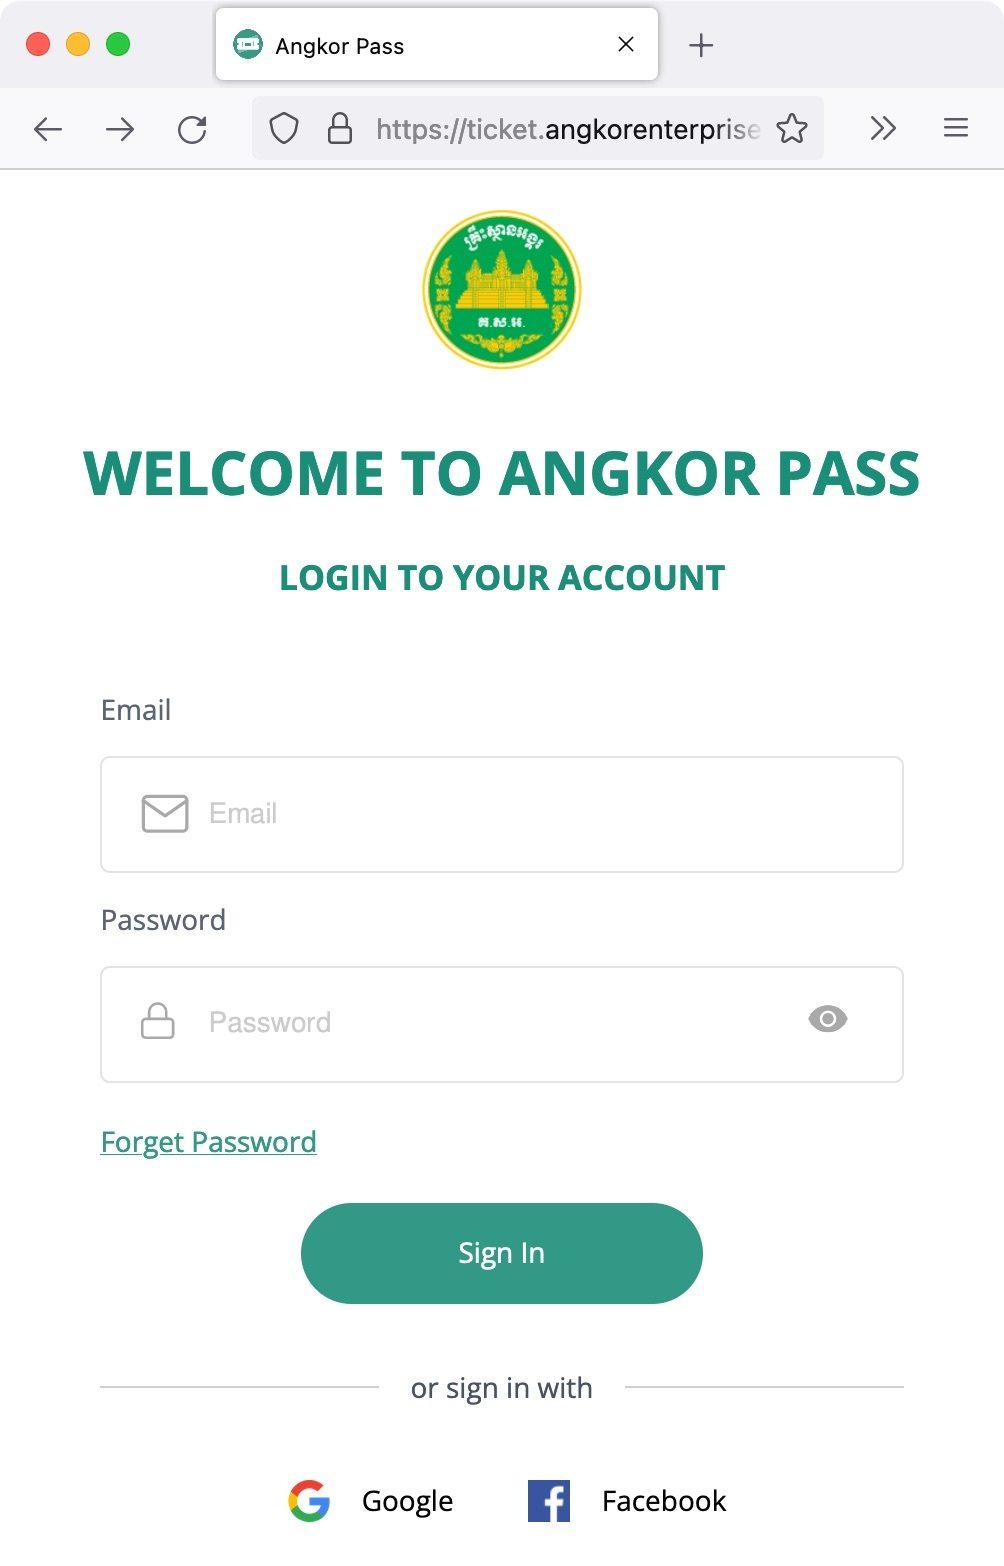 Angkor Pass als Online-Ticket - Login oder Registrierung für den Online-Ticket-Shop bei Angkor Enterprise